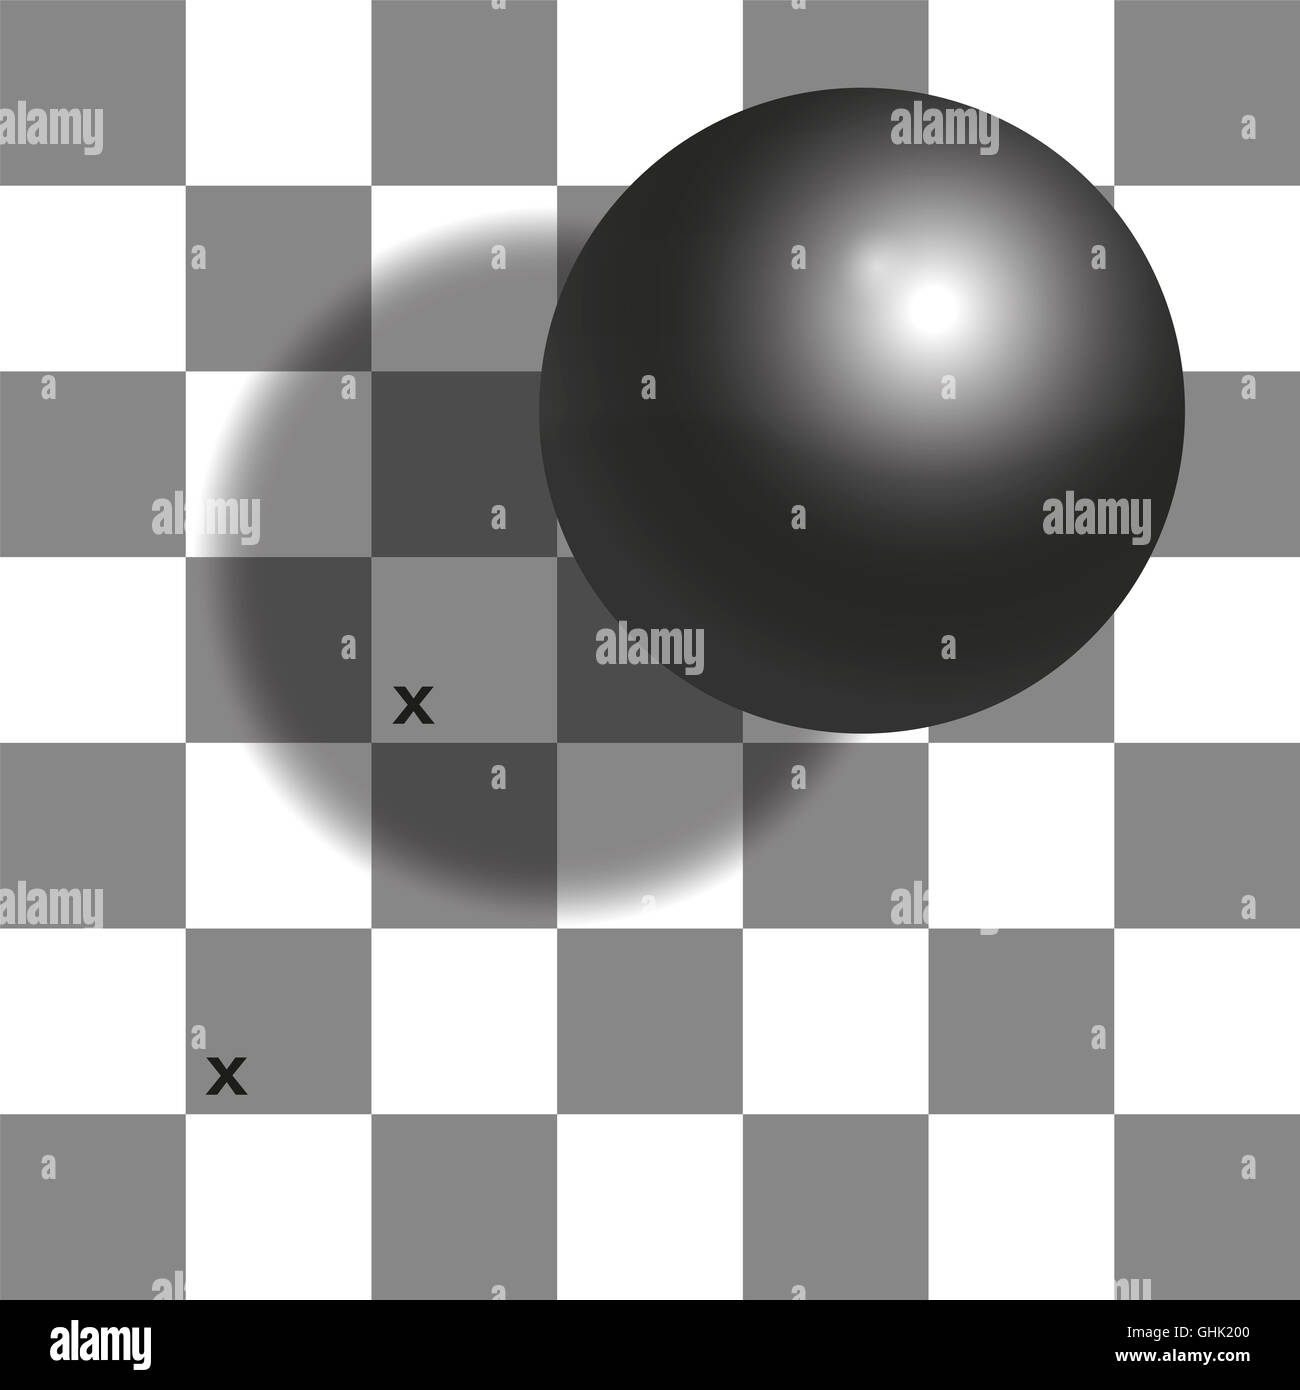 Checker ombra illusione - le due piazze con marchio x sono la stessa tonalità di grigio. Foto Stock